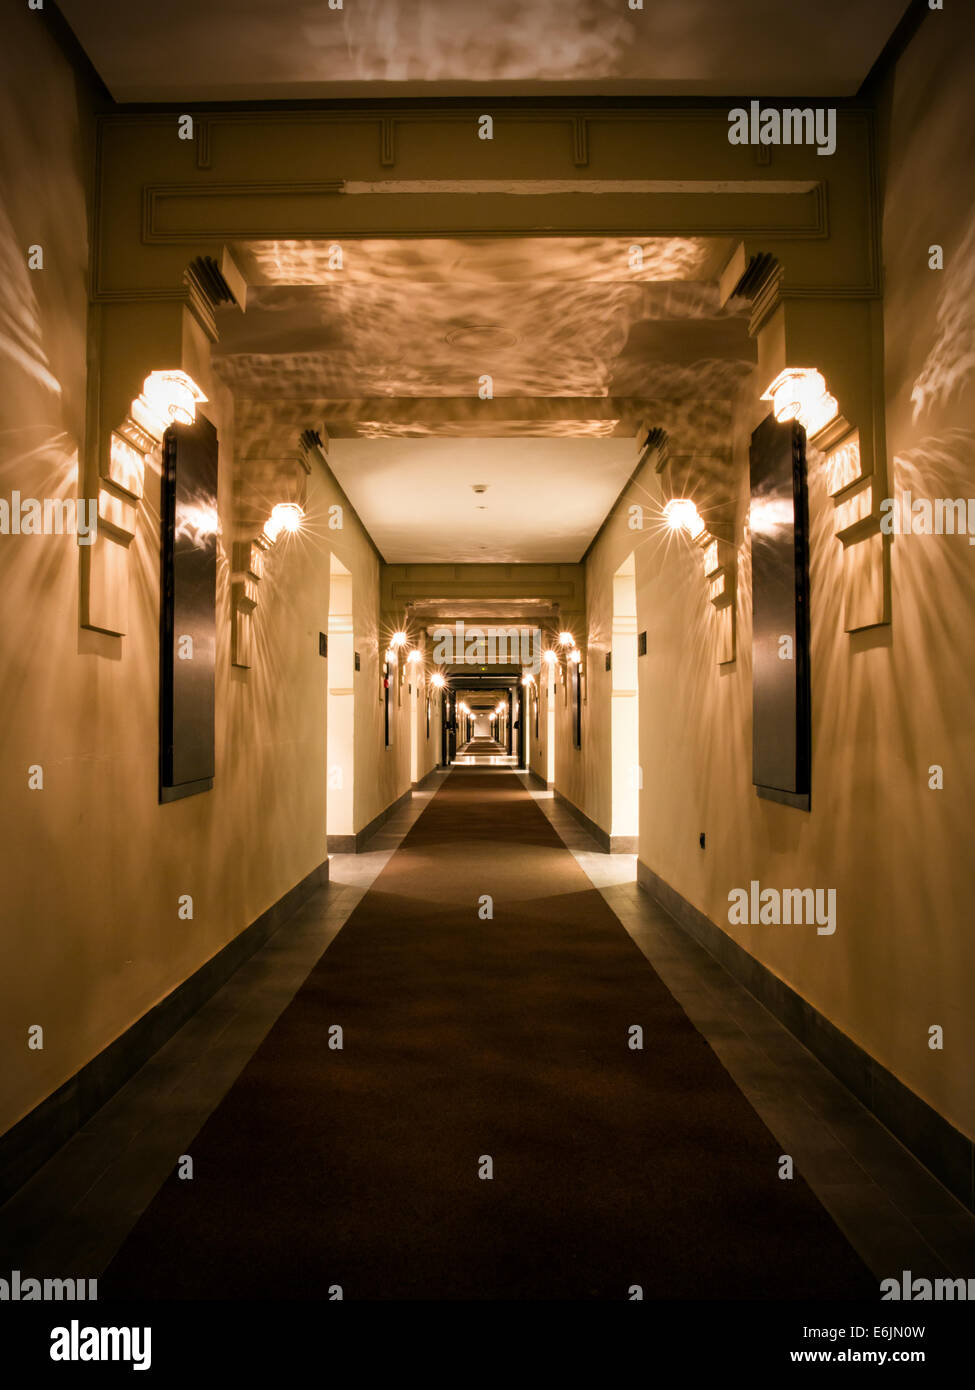 Moderno hotel vacío corredor en tono marrón Foto de stock